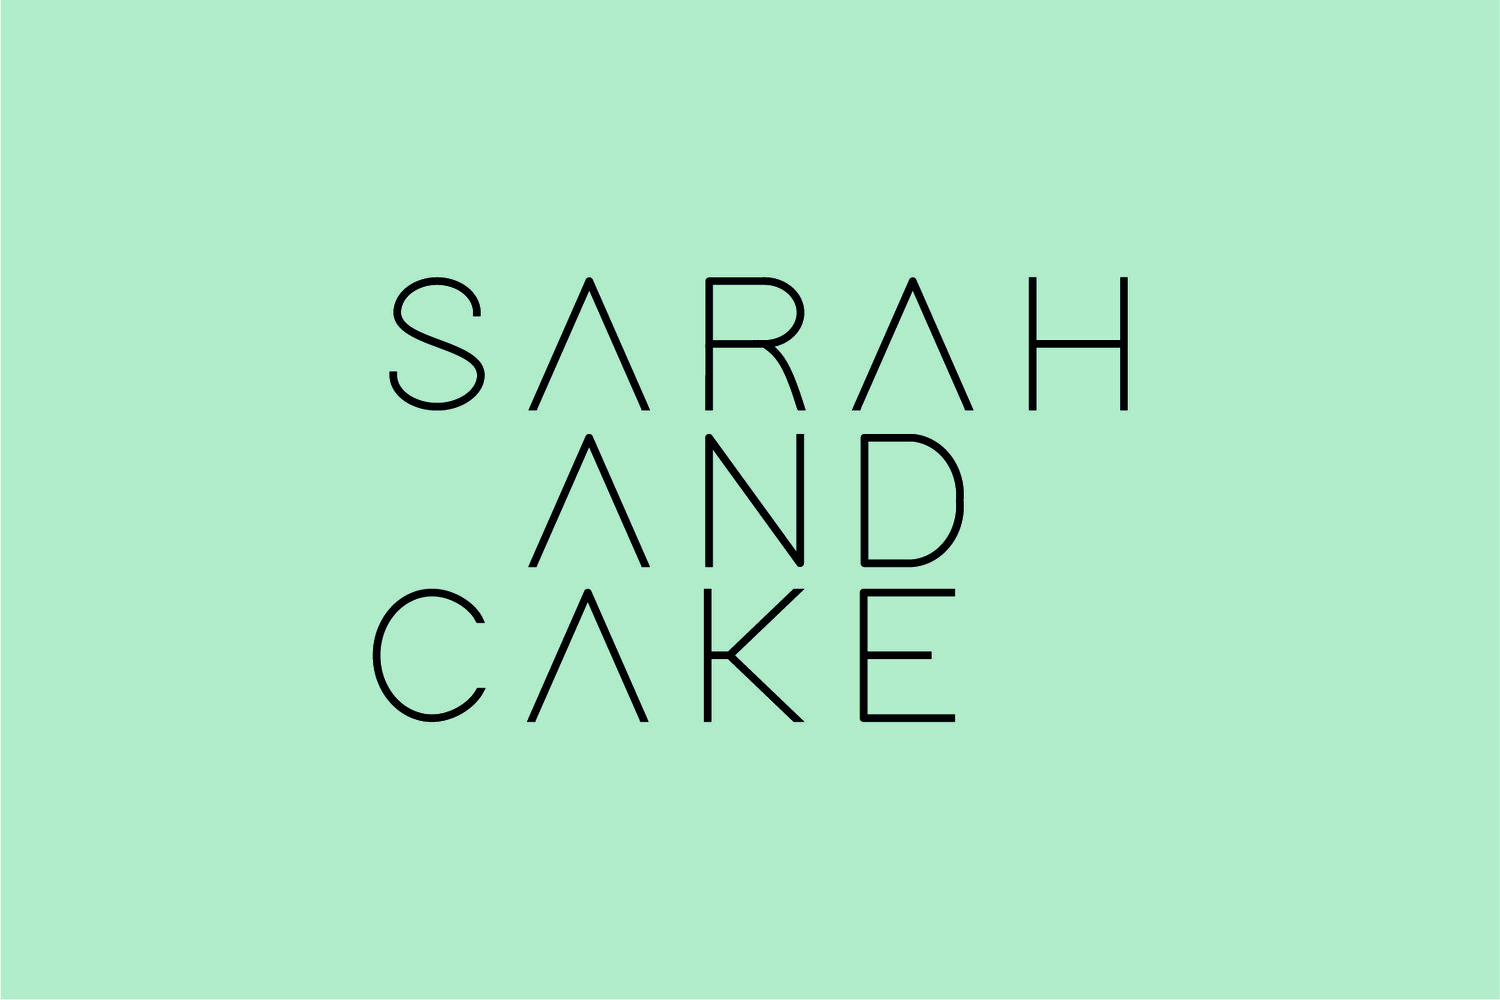 Sarah and Cake